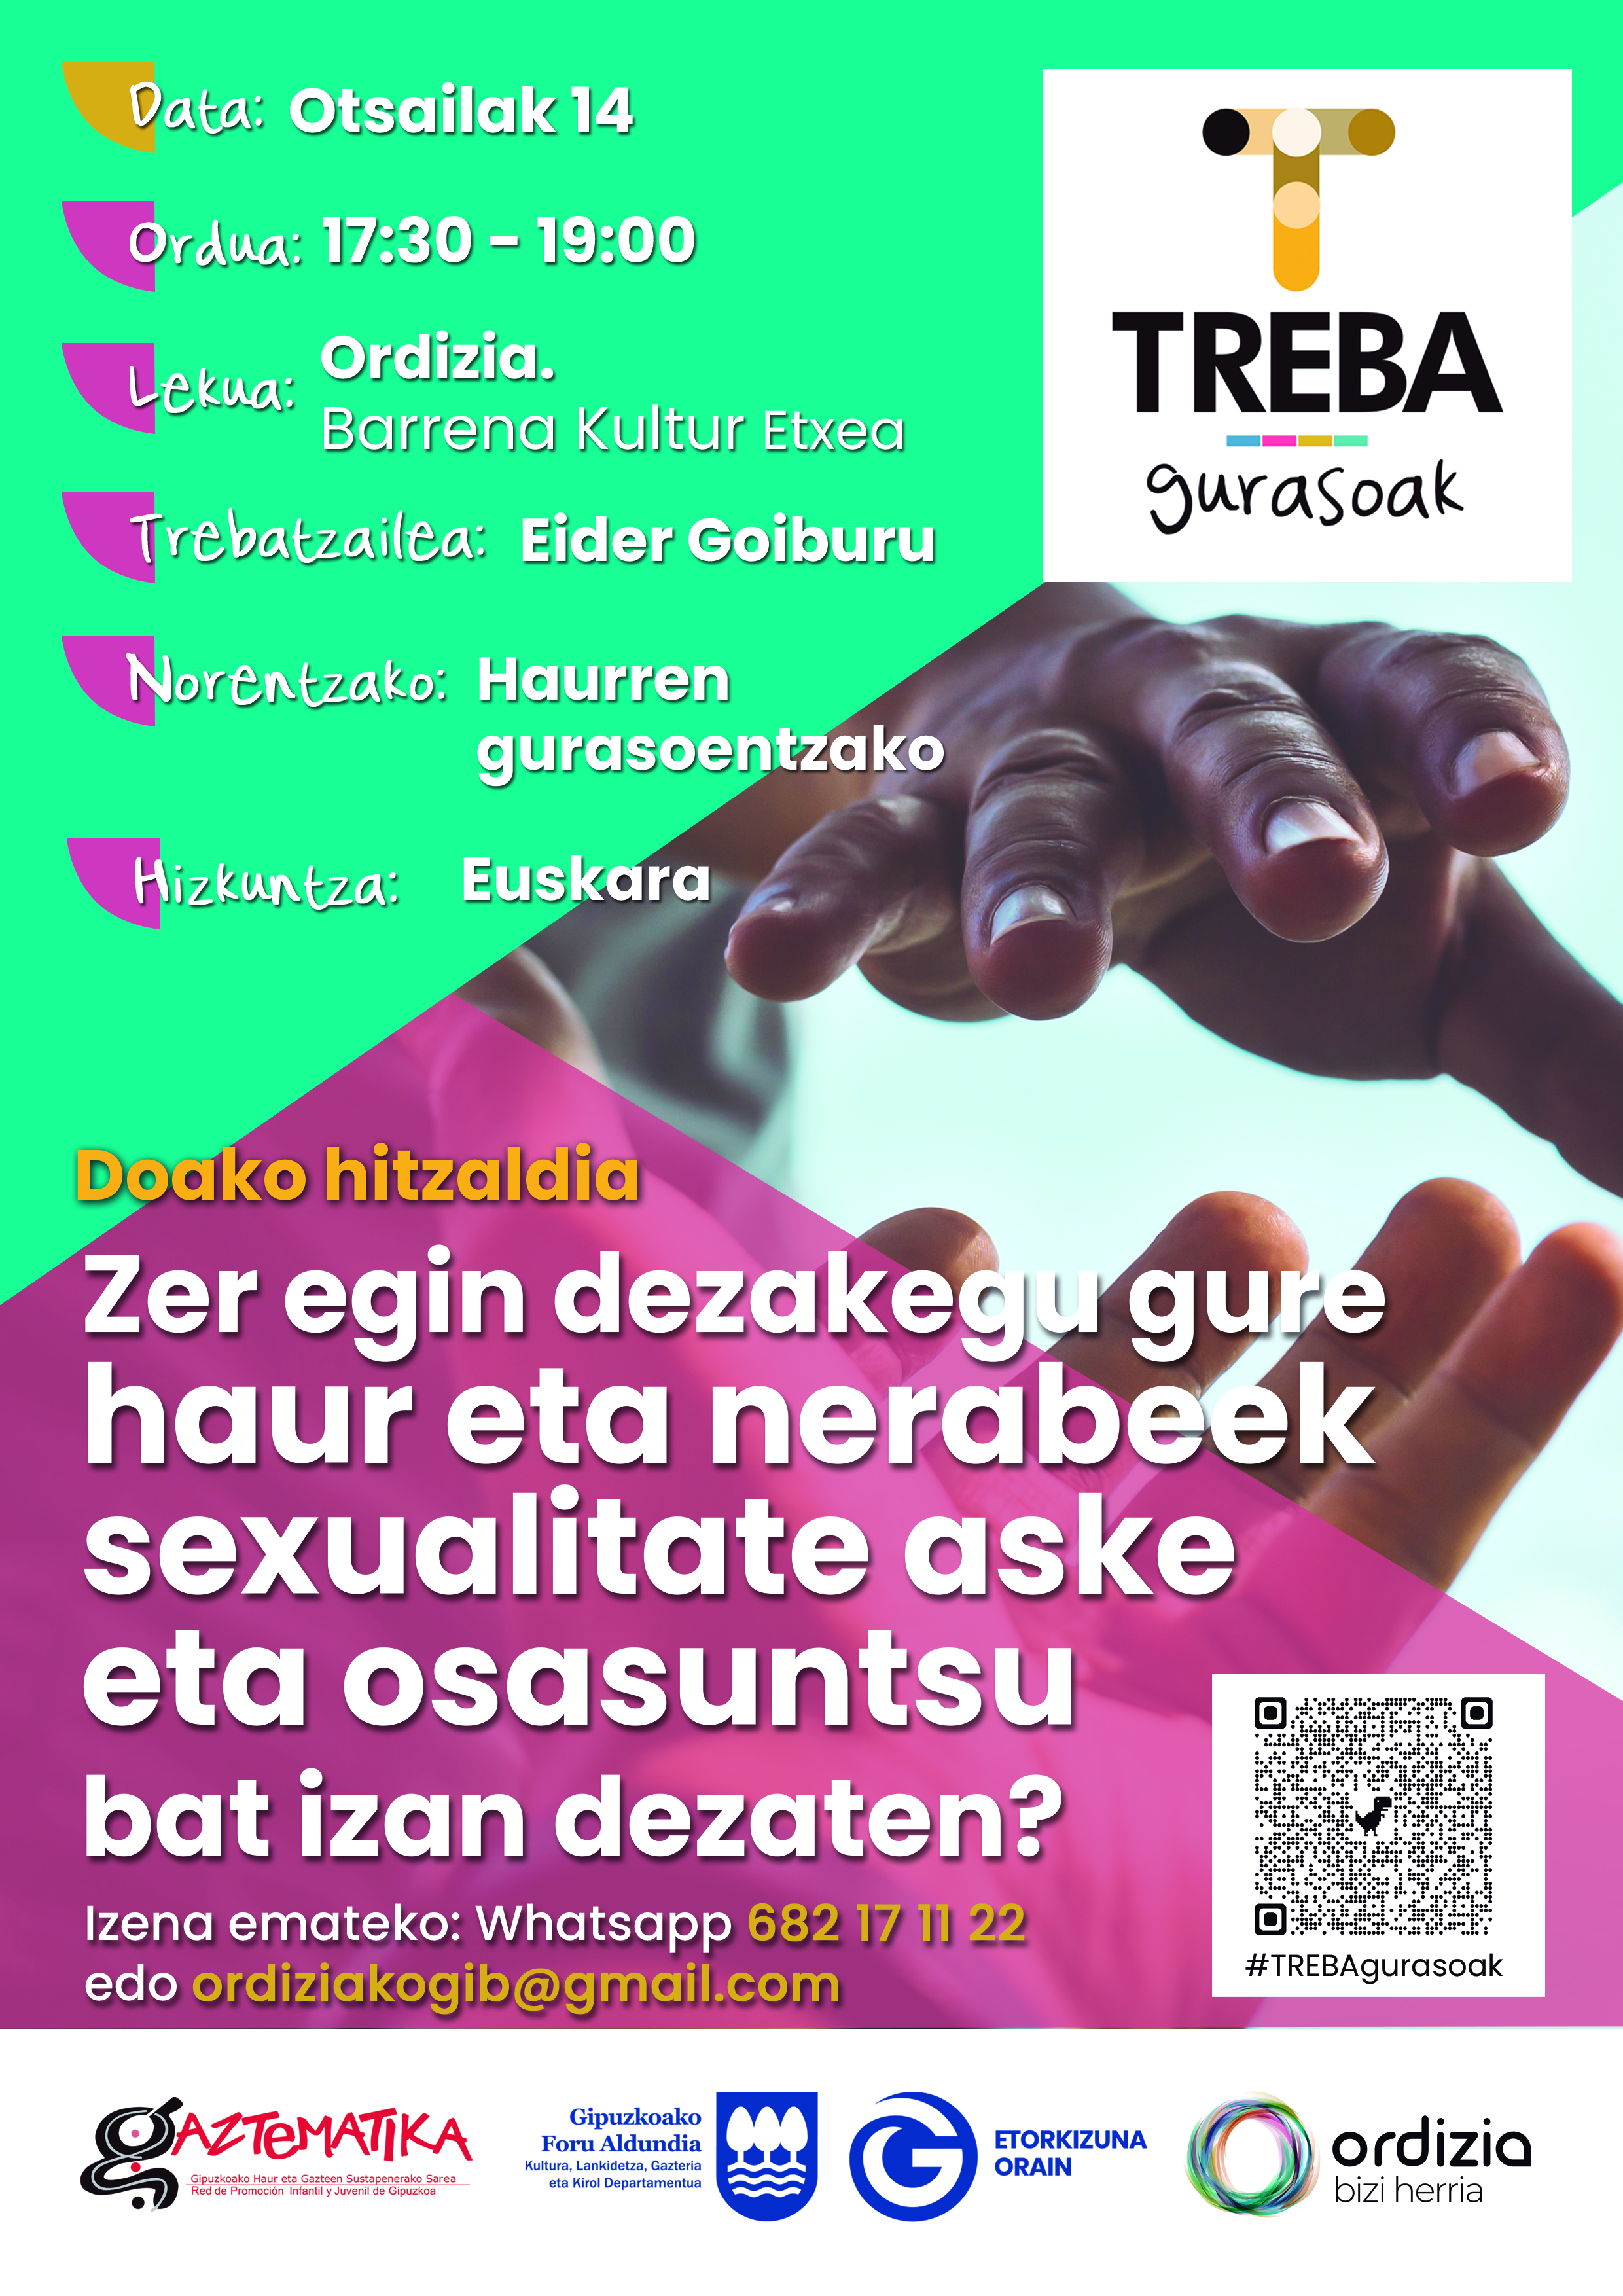 Sexkuntza: sexualitateari buruzko formakuntza tailerrak